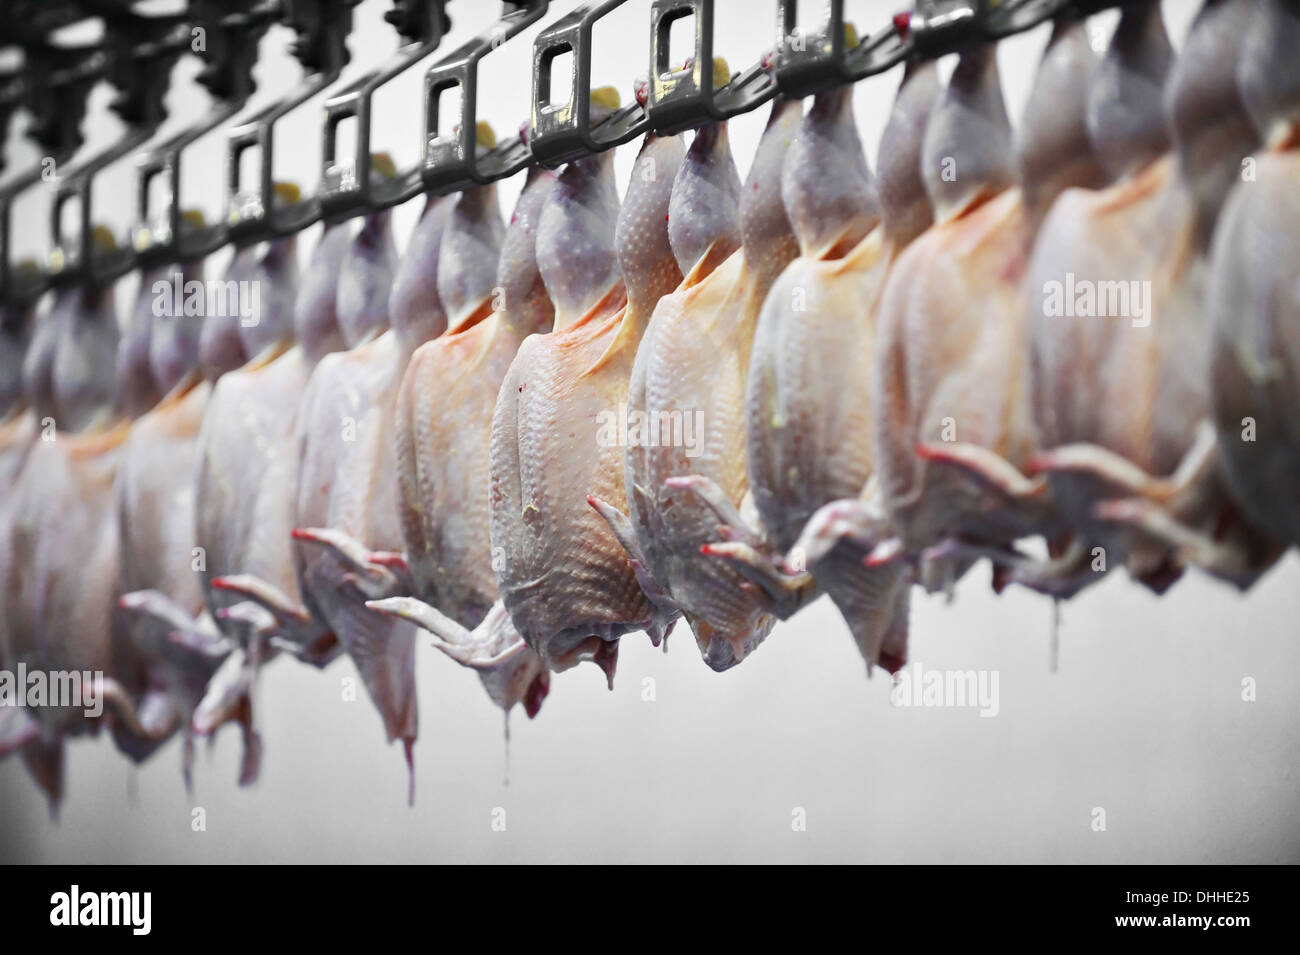 Detalle de la industria alimentaria con el procesamiento de carne de aves de corral Foto de stock